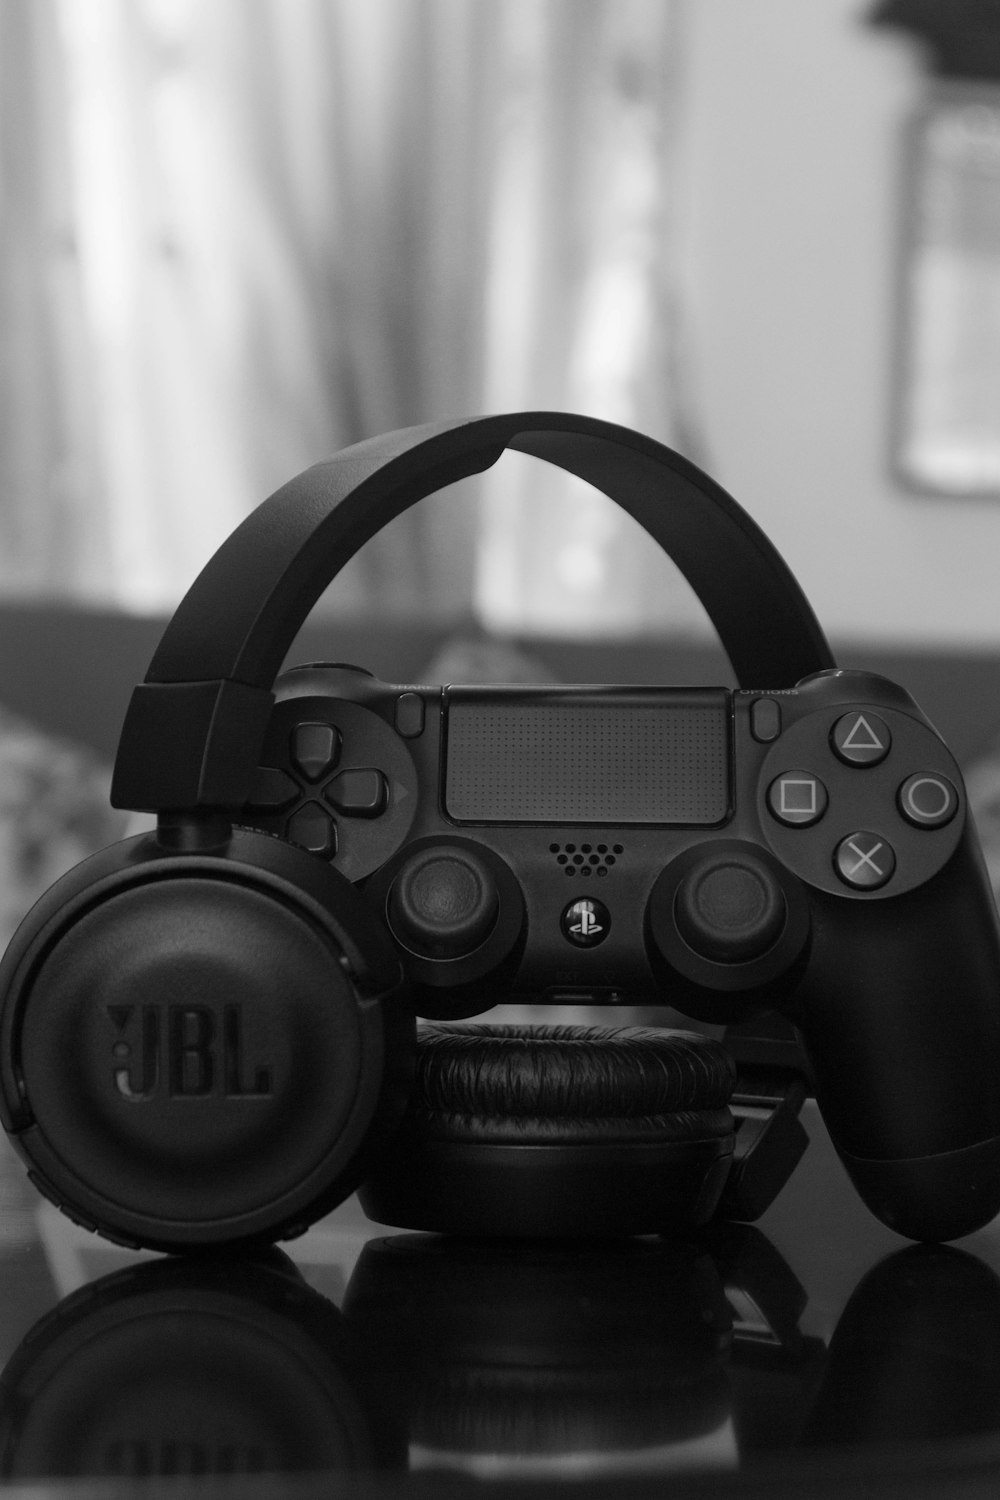 Sony PS DualShock 4 beside JBL wireless headphones